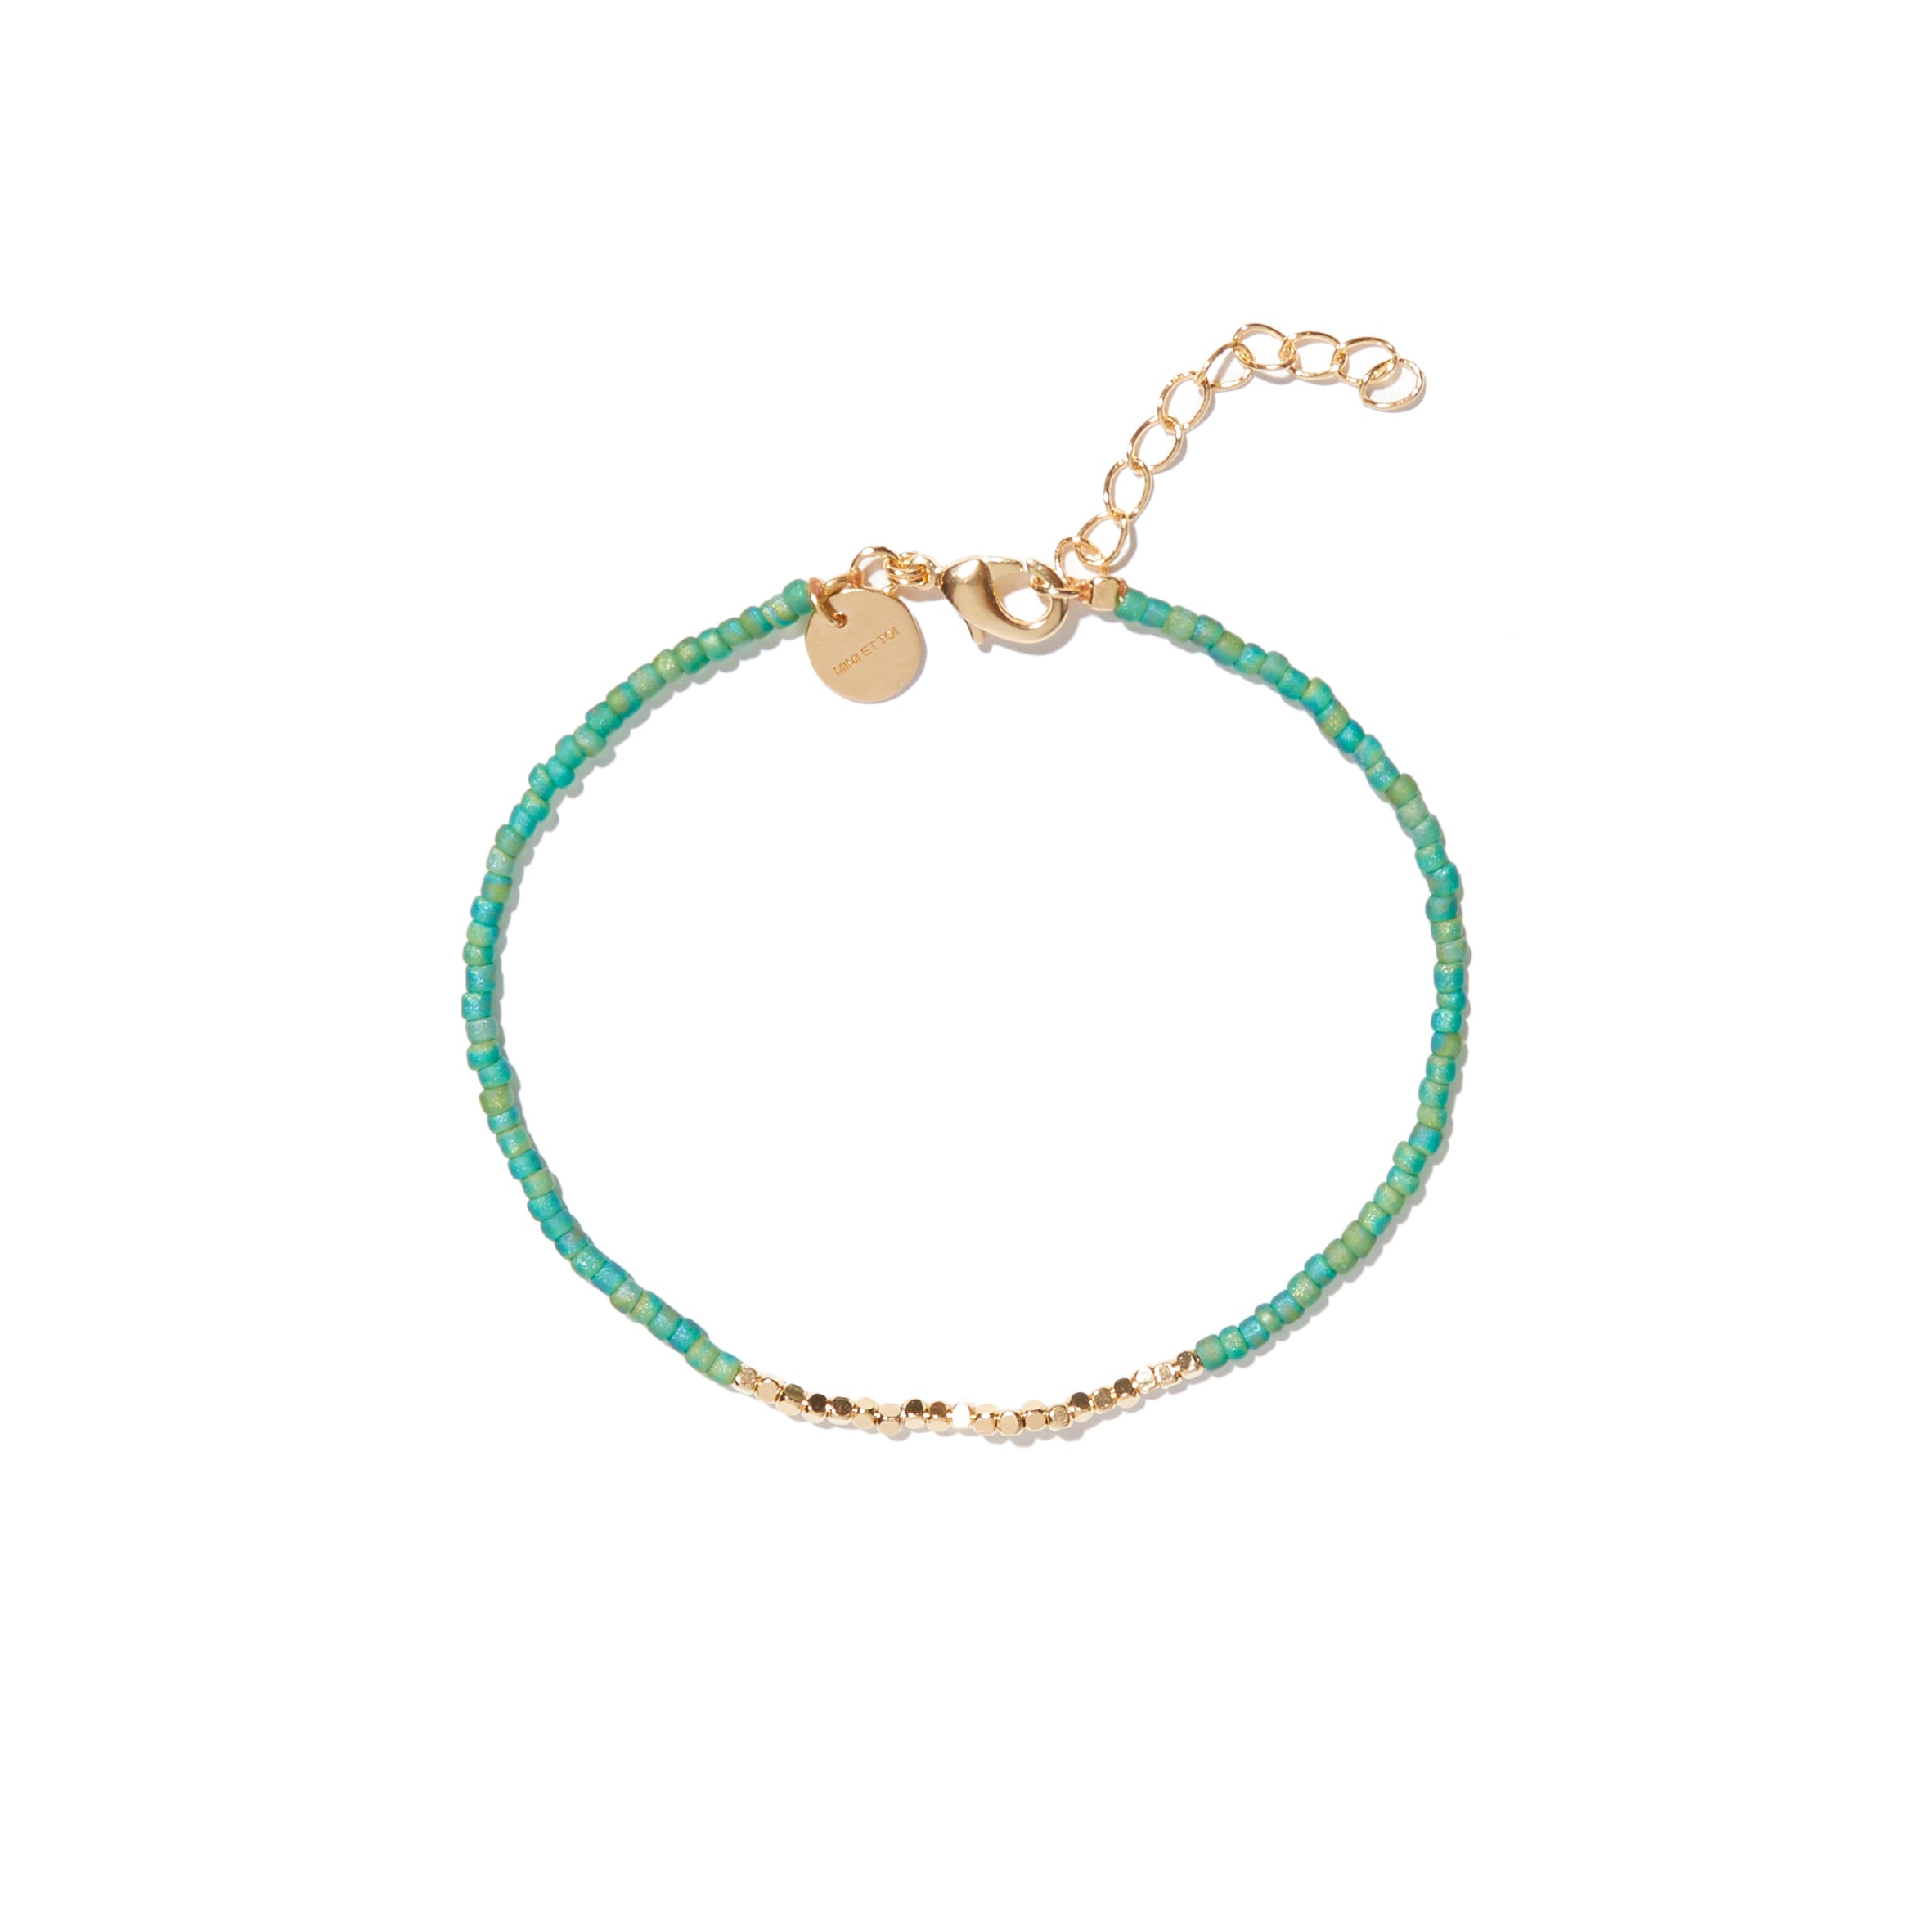 Mae turquoise bracelet